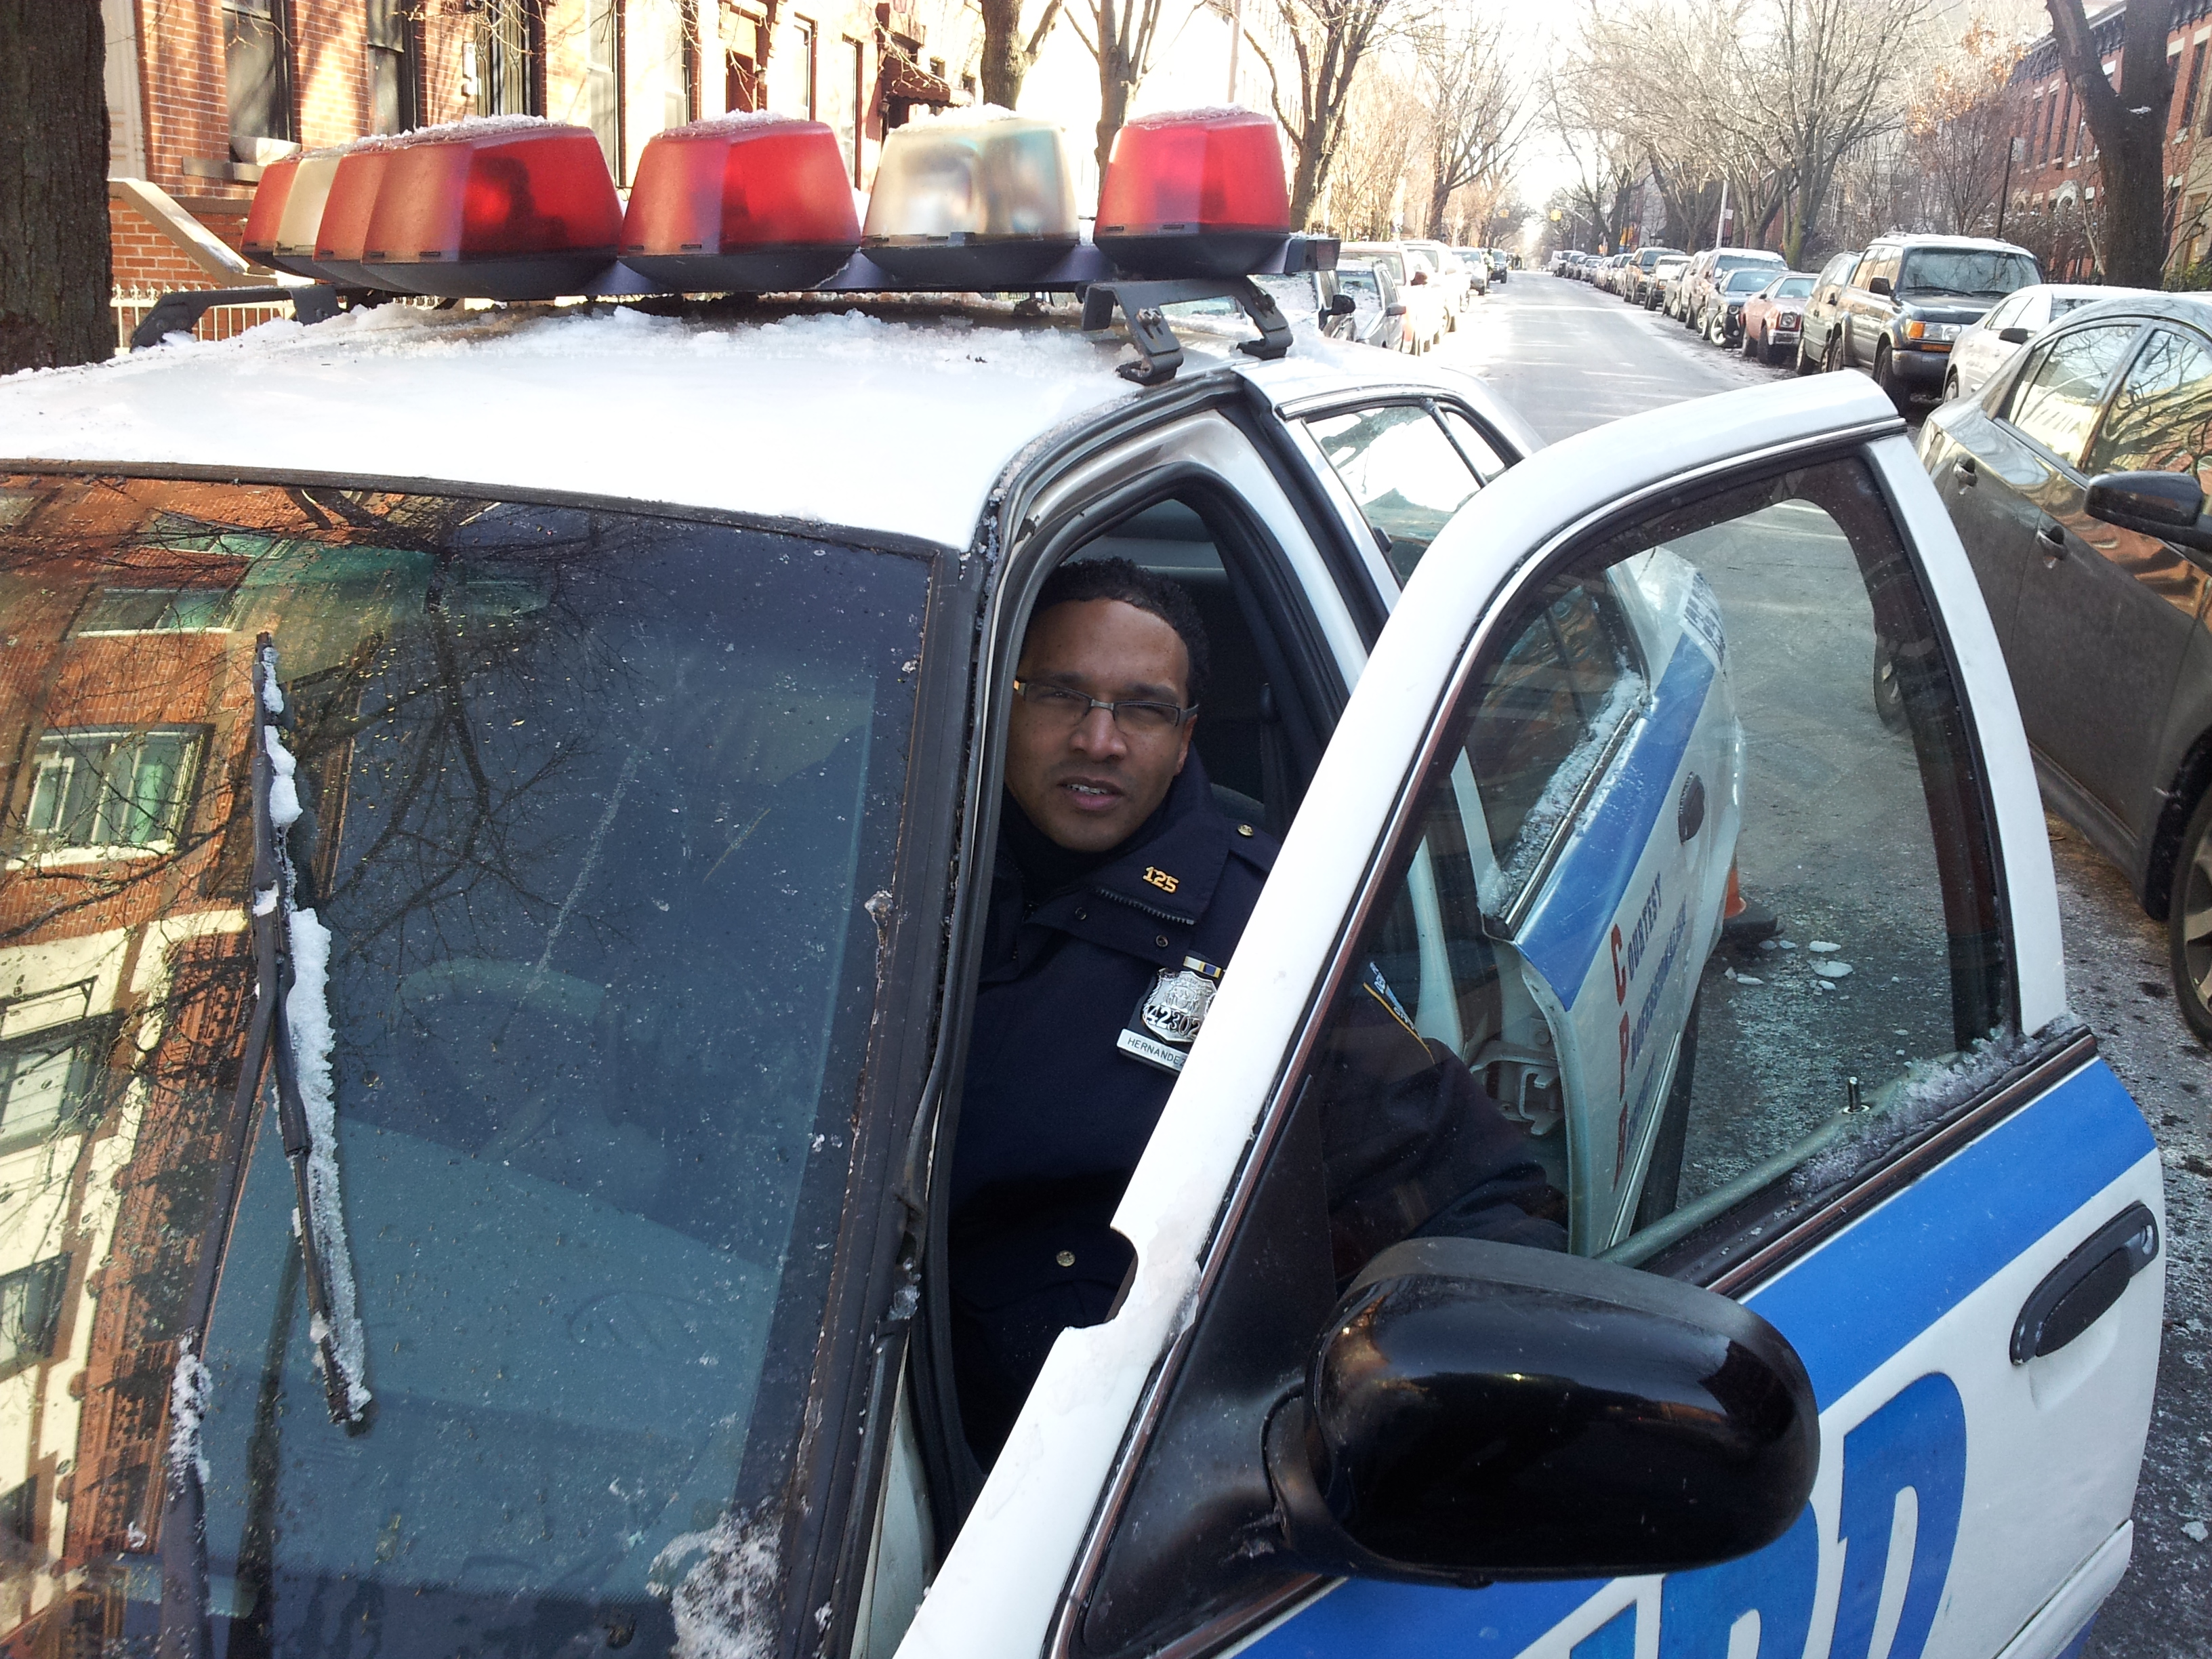 Police Officer Carl Taxi Brooklyn #policeofficercarl #carlducena